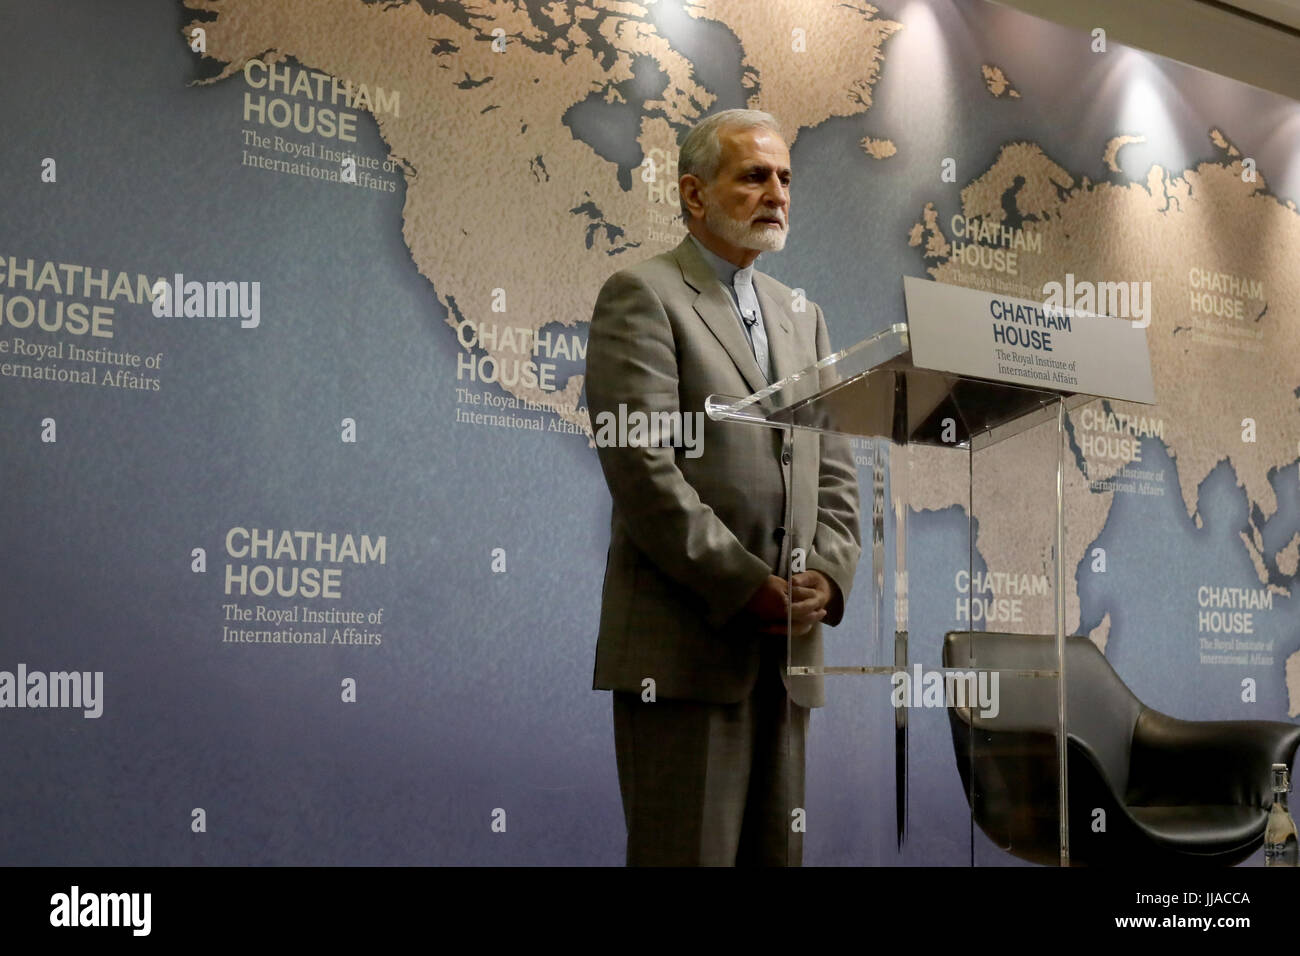 Londres, Reino Unido. 19 Jul, 2017. El Dr. Kamal Kharrazi, ex Ministro de Relaciones Exteriores iraní, hablando en Chatham House, el 19 de julio de 2017. Crédito: Dominic Dudley/Alamy Live News Foto de stock